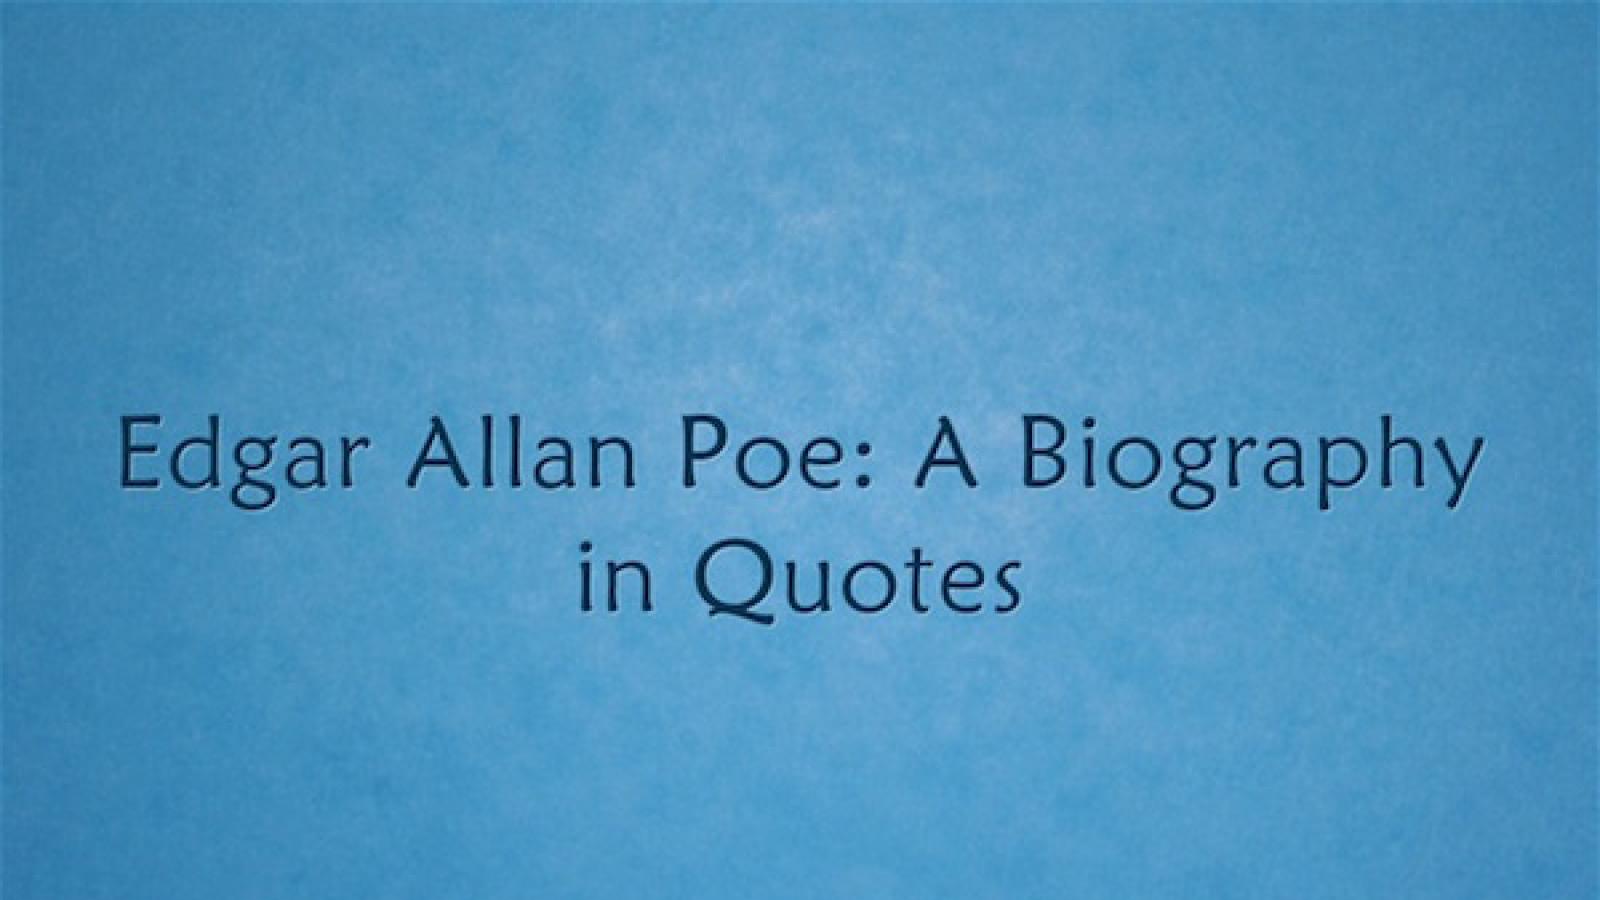 Edgar Allan Poe: Cuộc đời qua Trích dẫn | Quỹ Quốc gia cho ...: Chuyên mục Trích dẫn của Quỹ Quốc gia cho nghệ thuật biểu diễn mang đến cho bạn những câu nói đầy trí tuệ và tinh thần, như bài viết về cuộc đời Edgar Allan Poe. Dừng lại và ngâm mình trong những suy tư của những con người tài hoa để tìm ra điểm sáng cho chính mình.